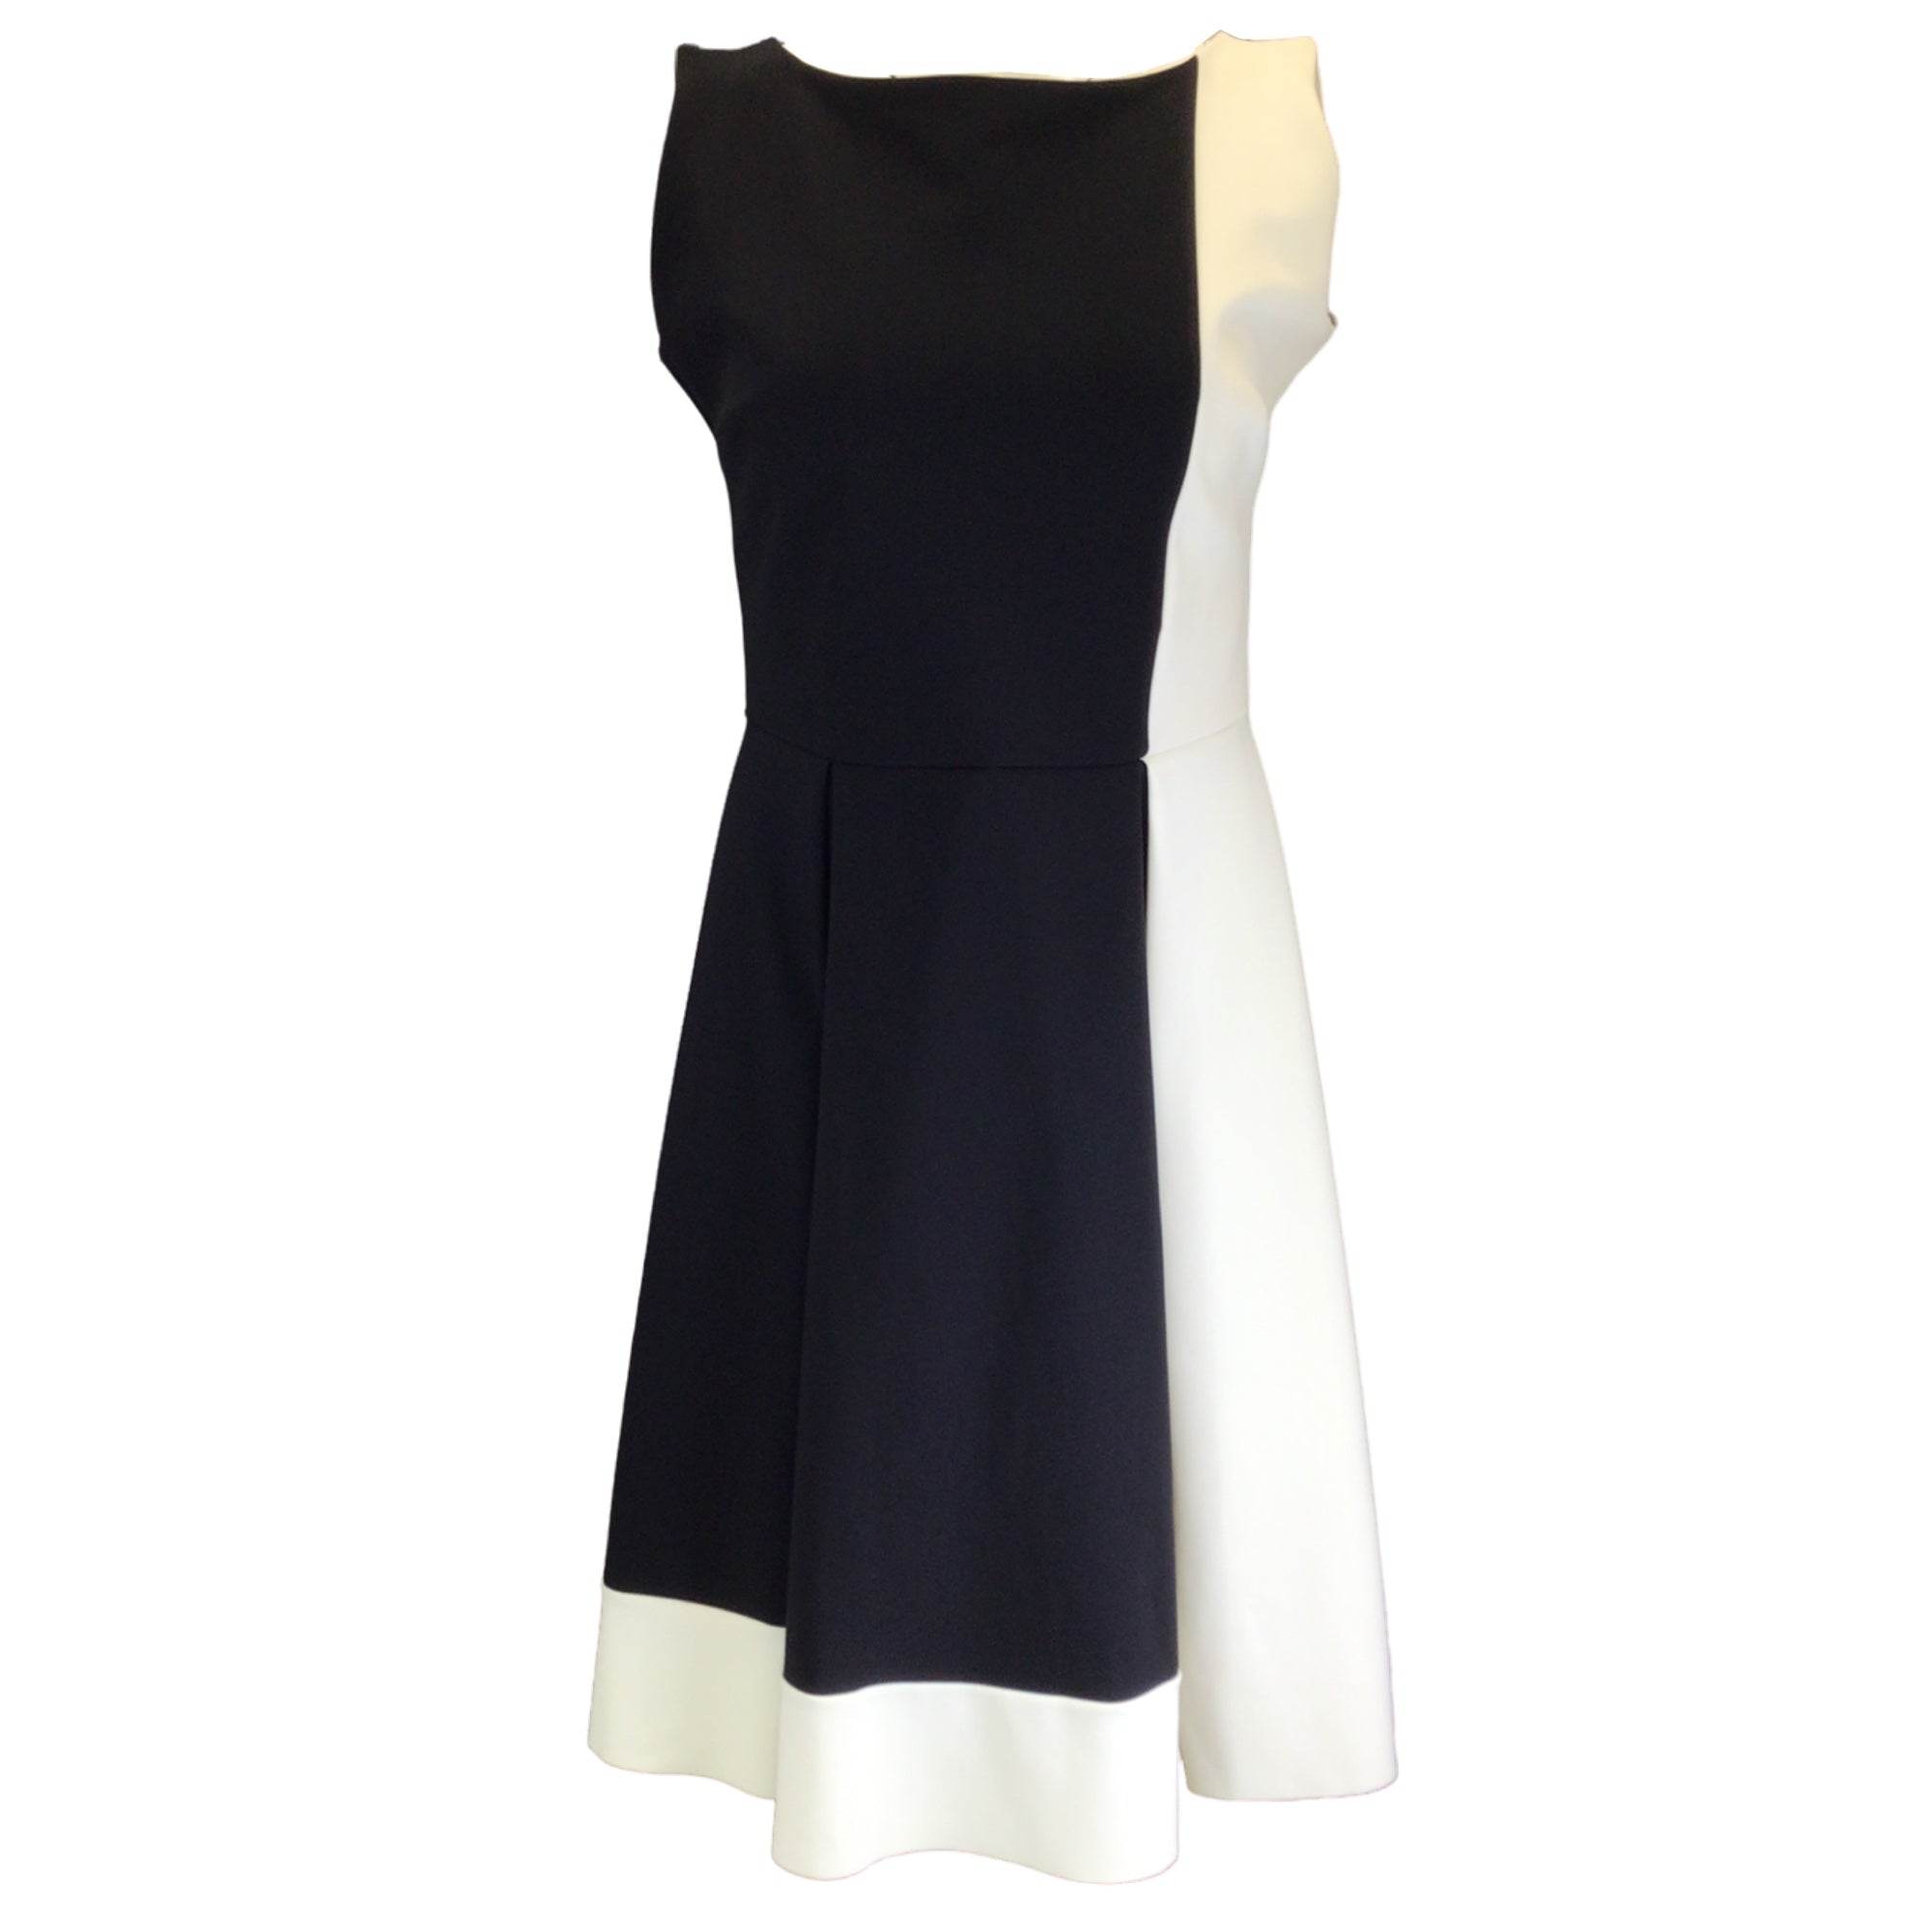 Chiara Boni La Petite Robe Black / Ivory Sleeveless Bateau Neck Nylon Dress